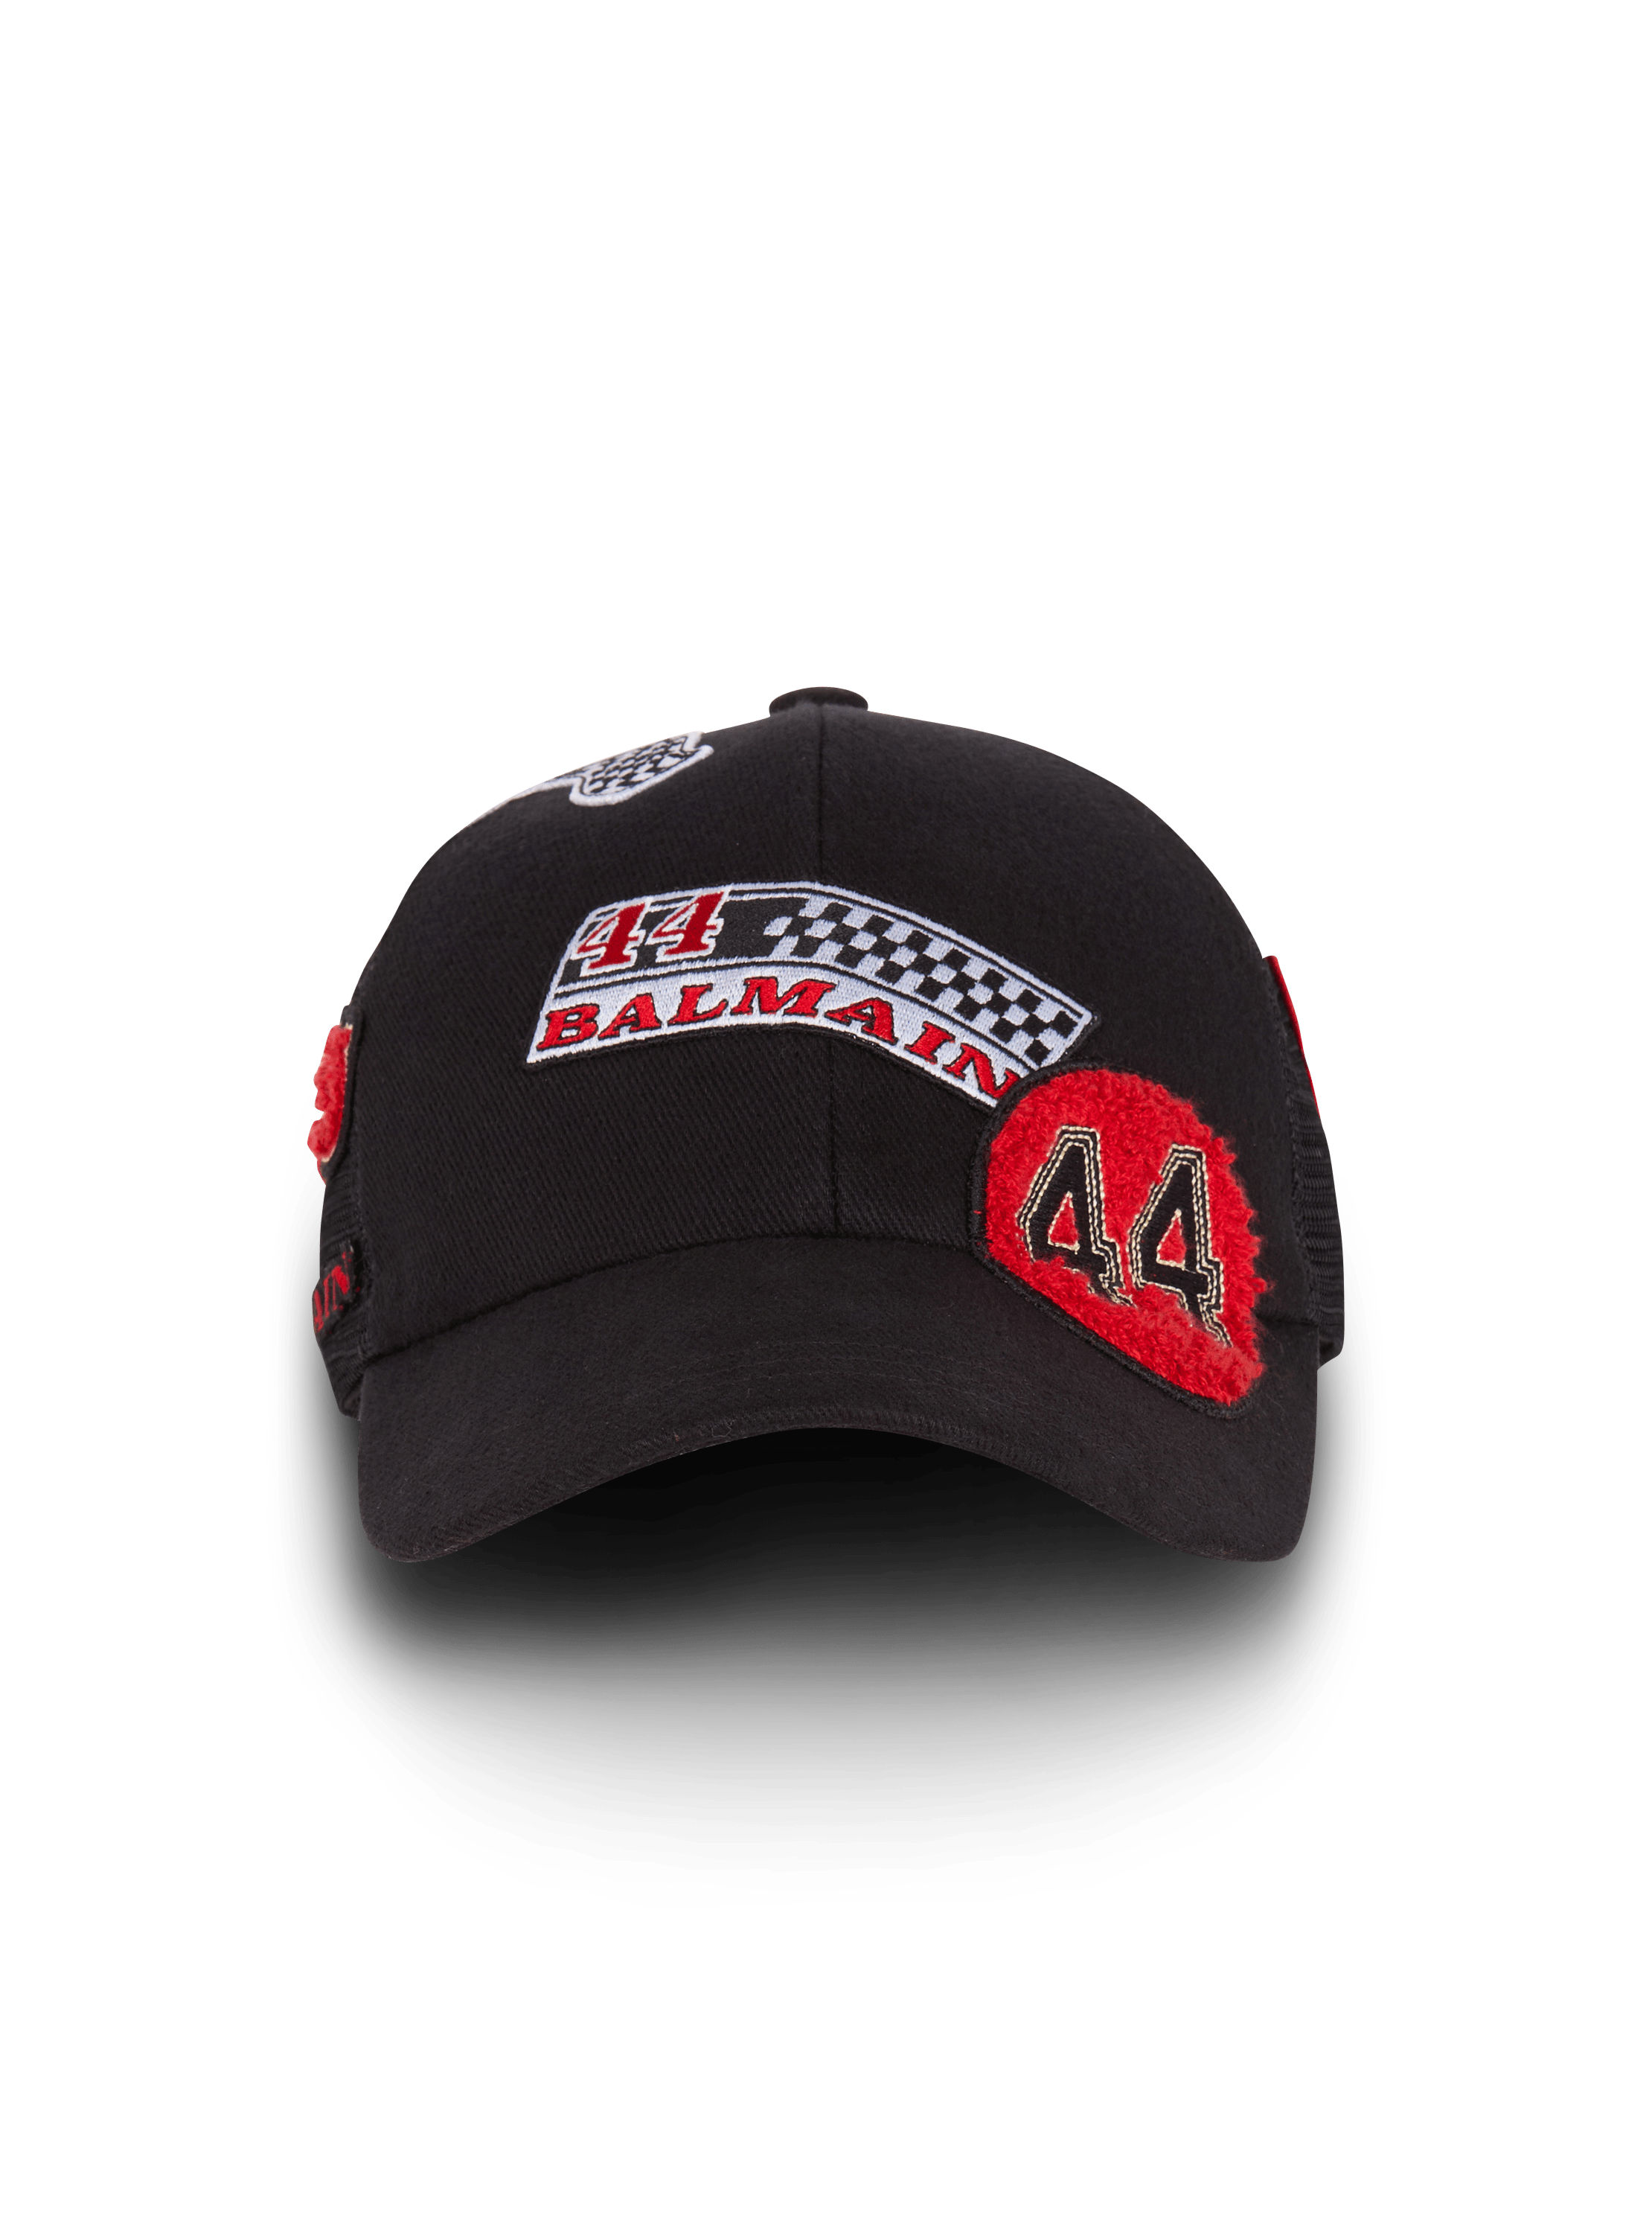 Balmain Racing cap with patches